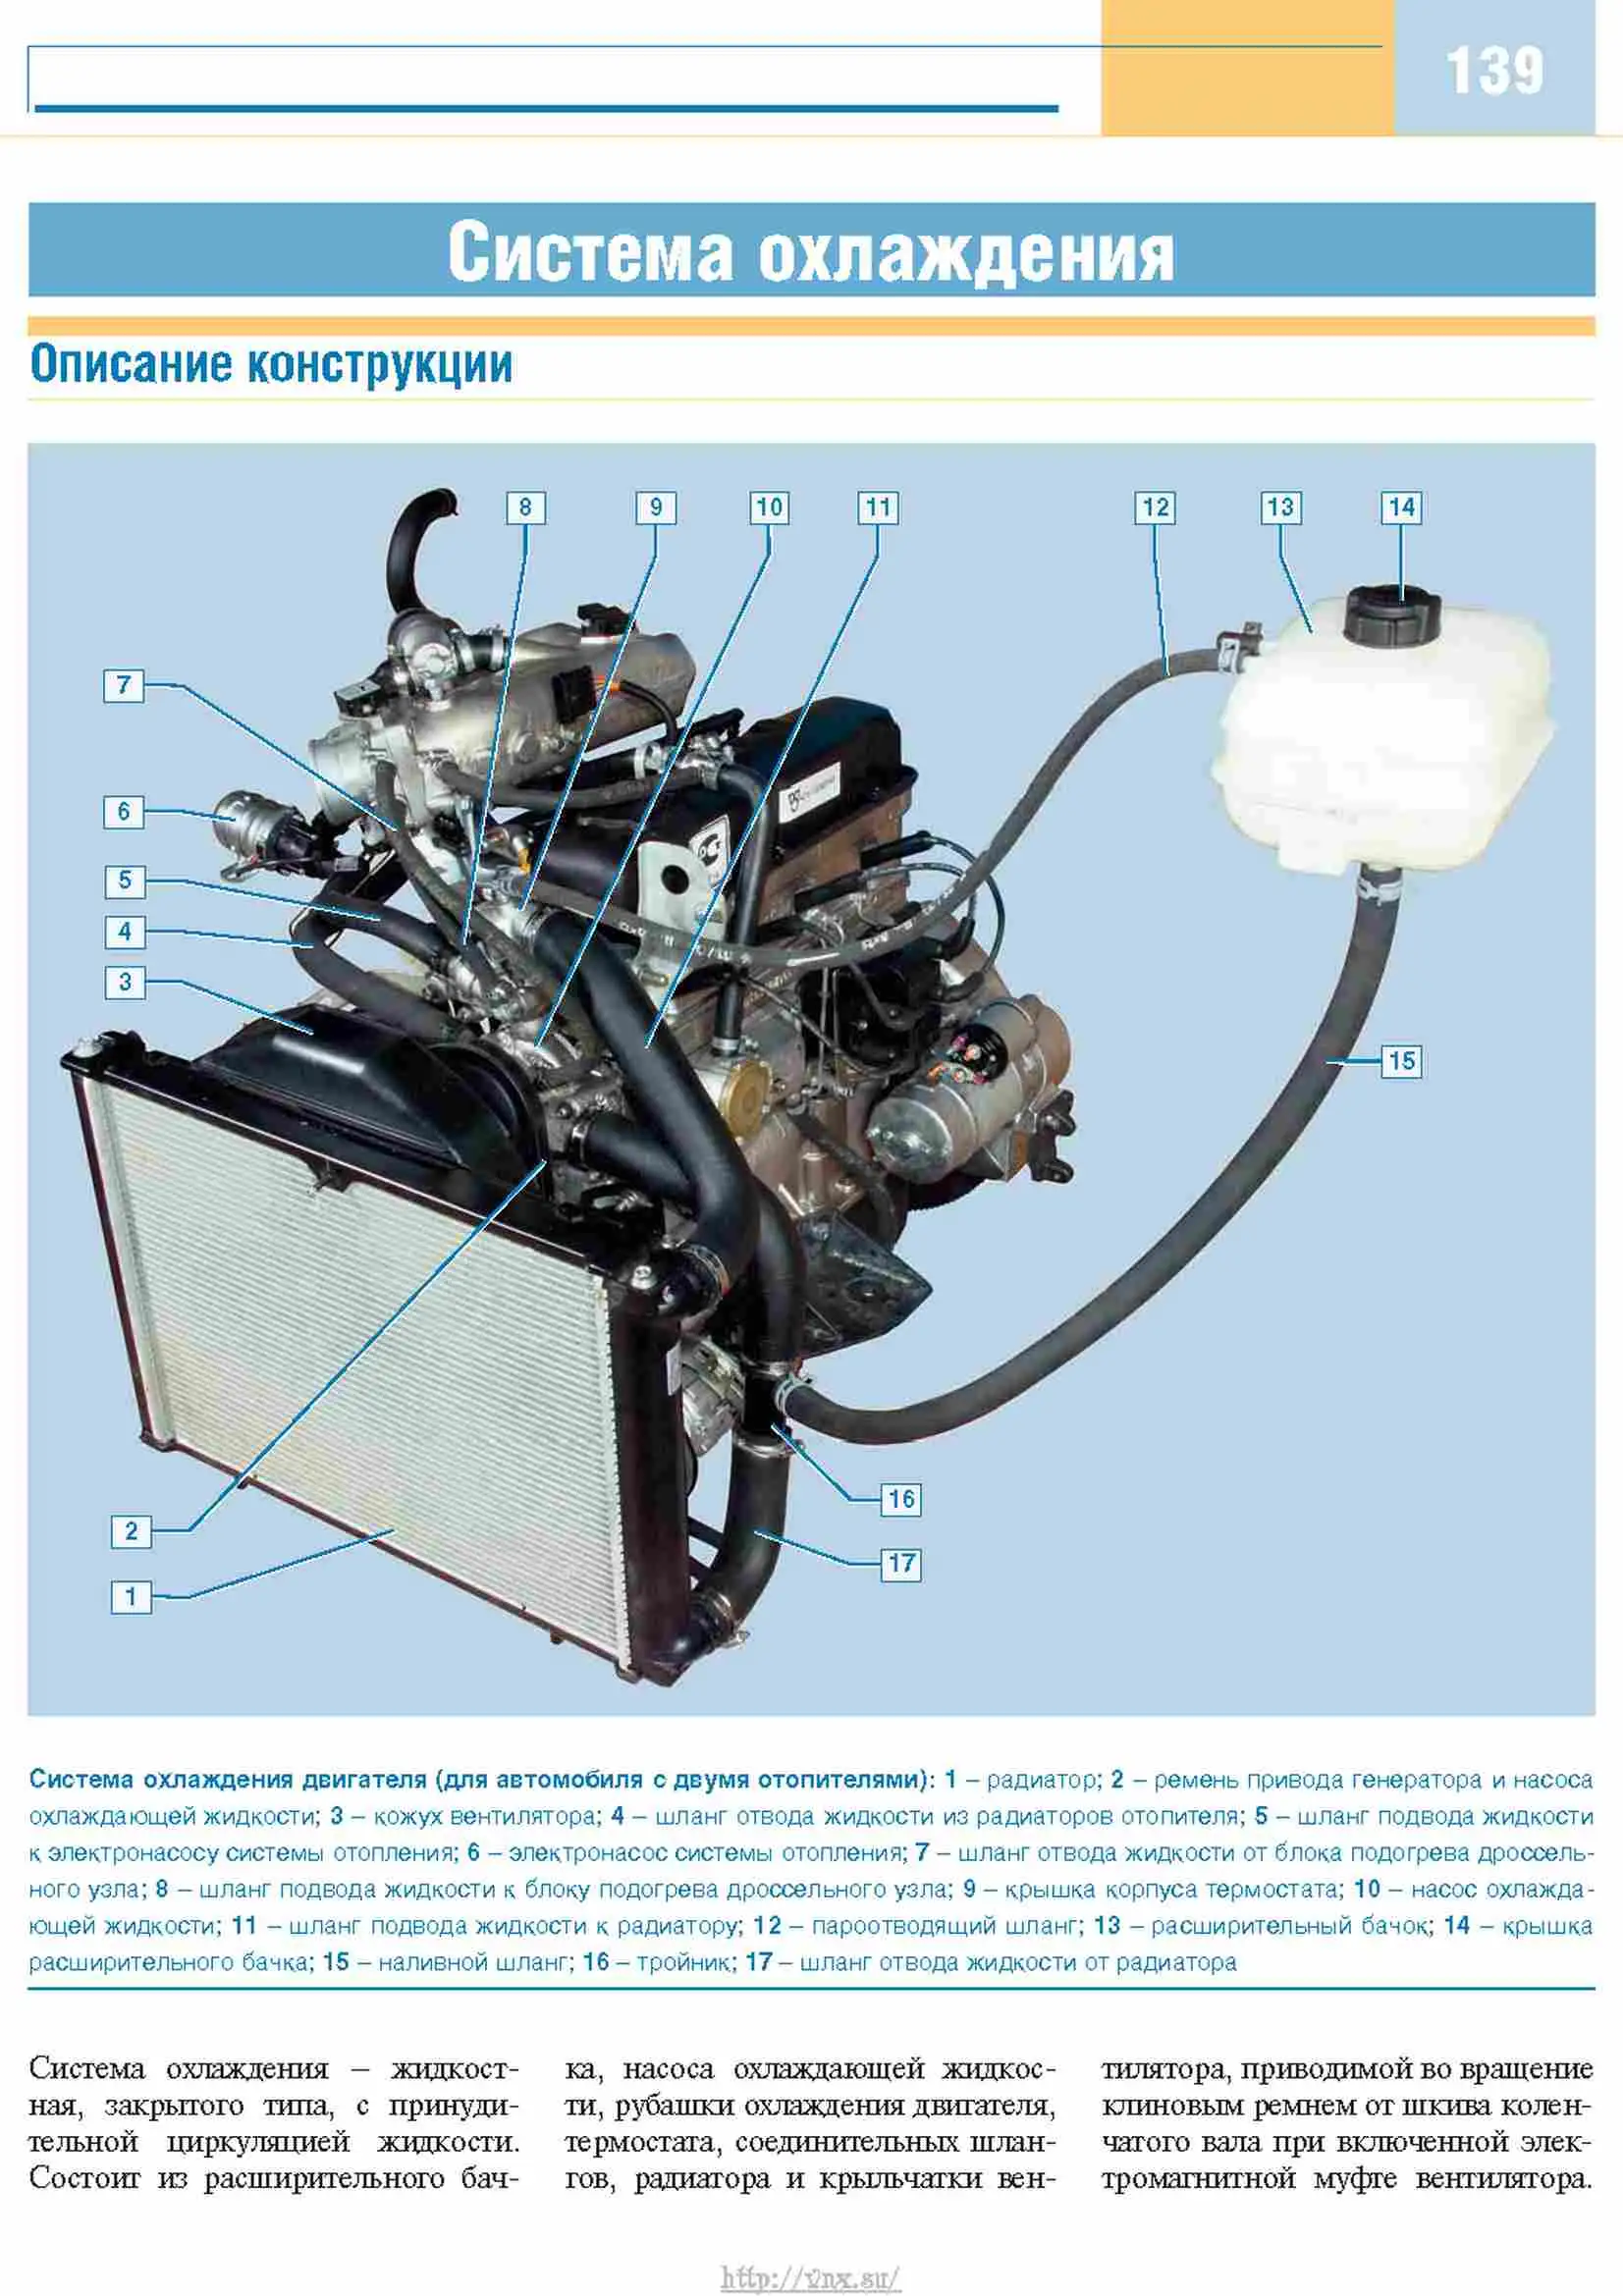 Система охлаждения и её элементы автомобилей ГАЗ